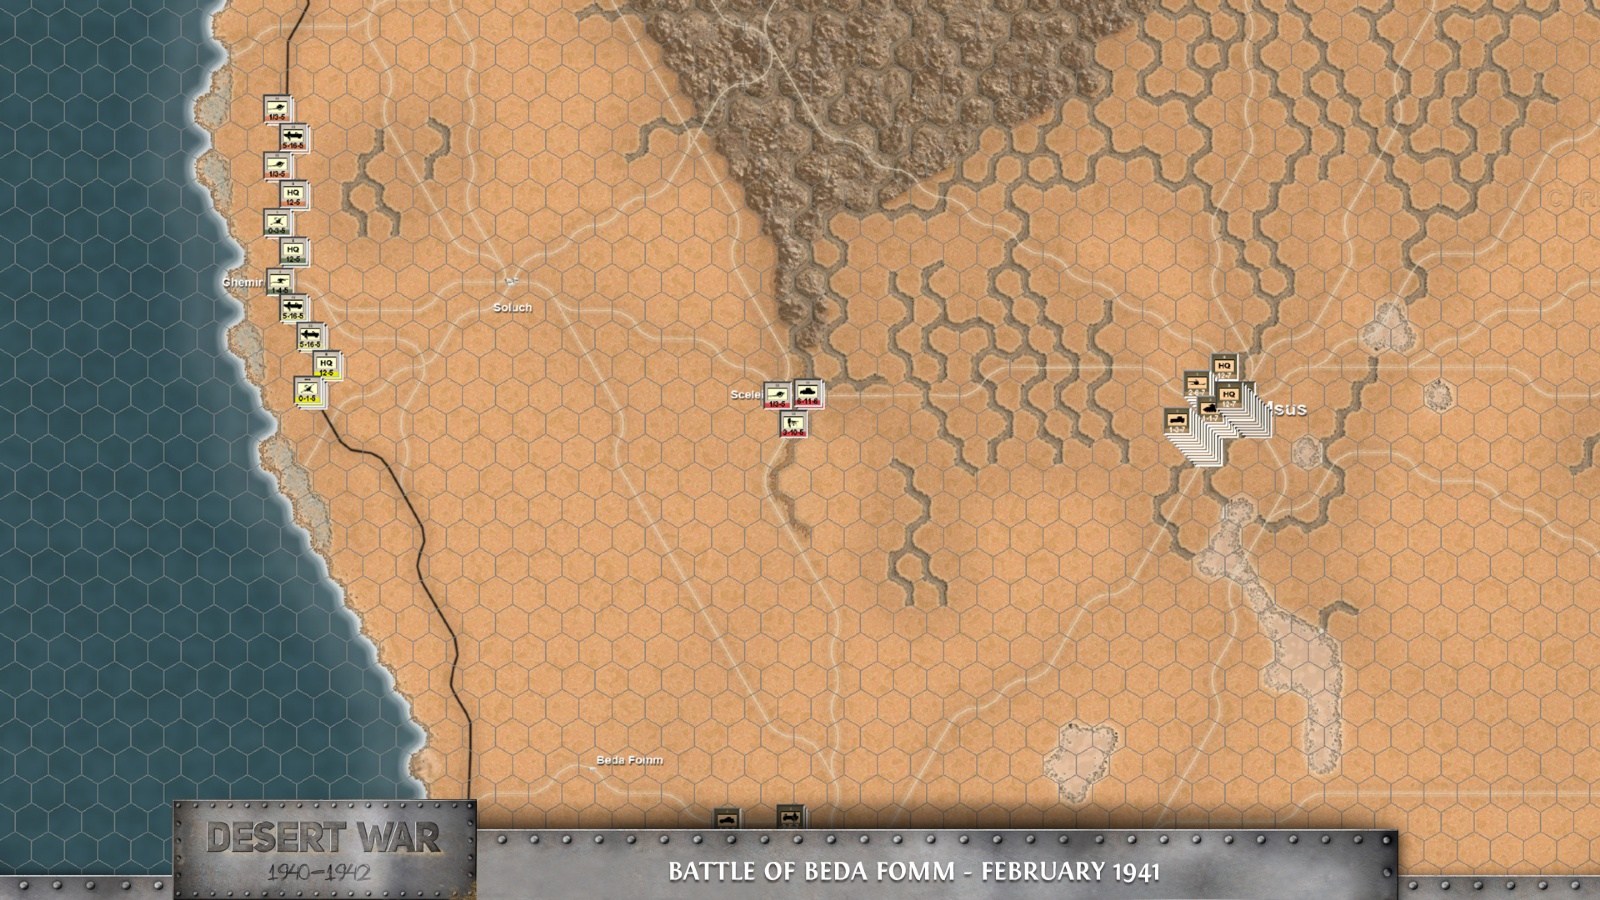 Desert War 1940-1942